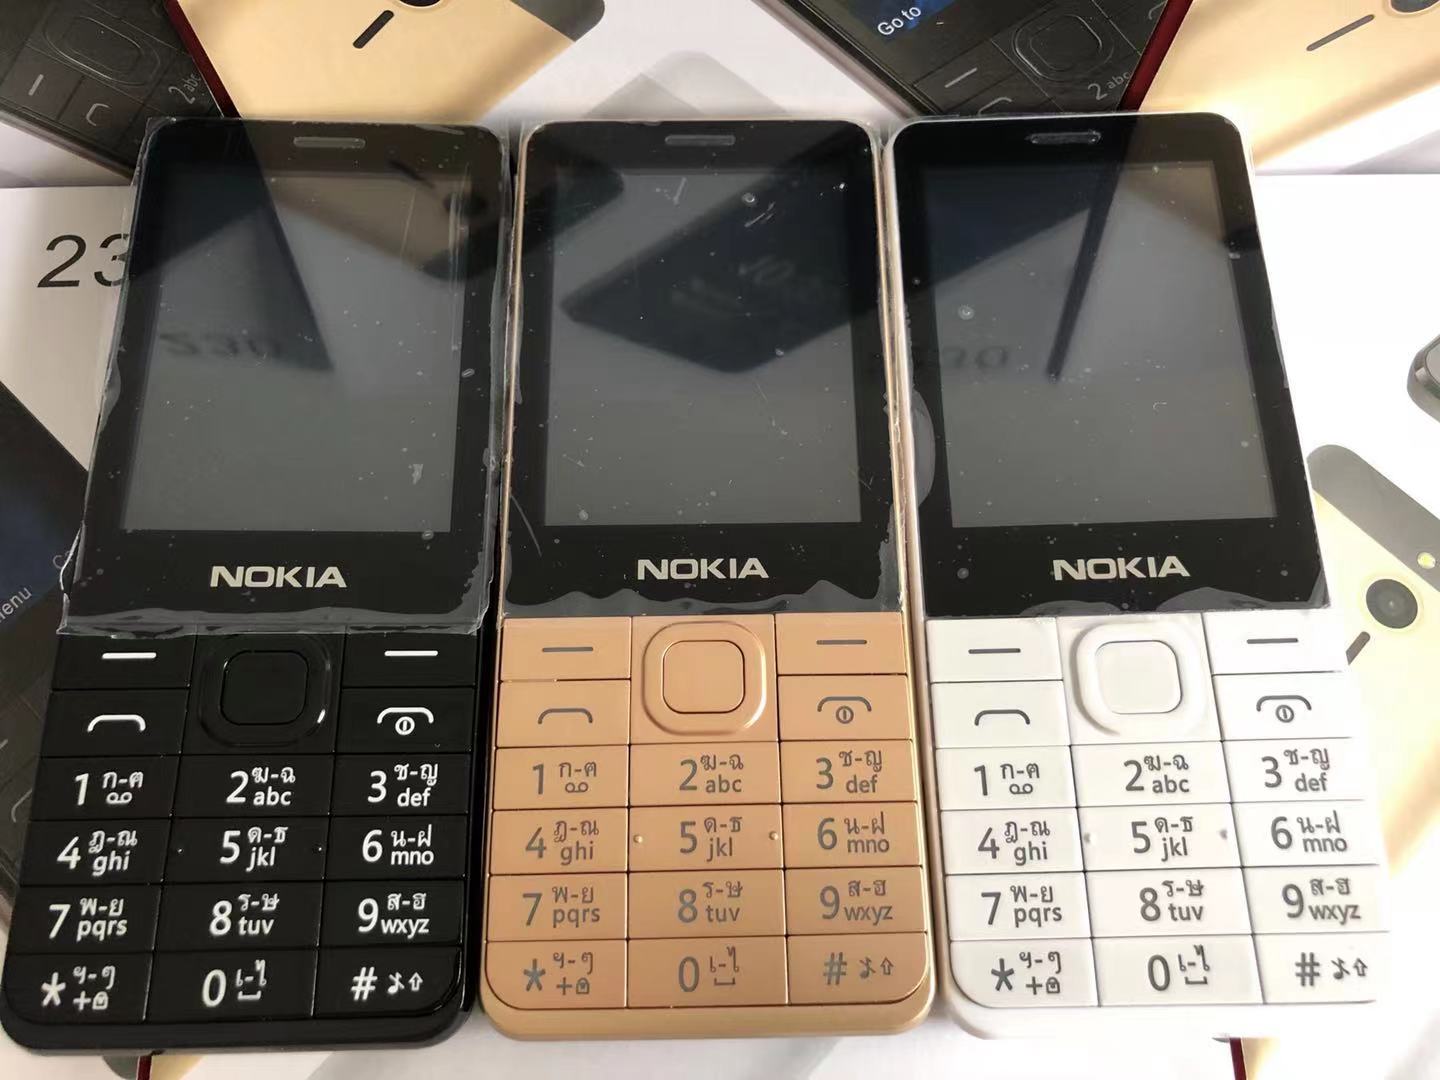 เกี่ยวกับ โทรศัพท์มือถือปุ่มกด Nokia 230 แท้ 4G ใหม่ล่าสุด ปุ่มกดไทย เมนูไทย，มือถือโนเกีย 230 จอใหญ่ 2.8’จอใหญ่กว่า